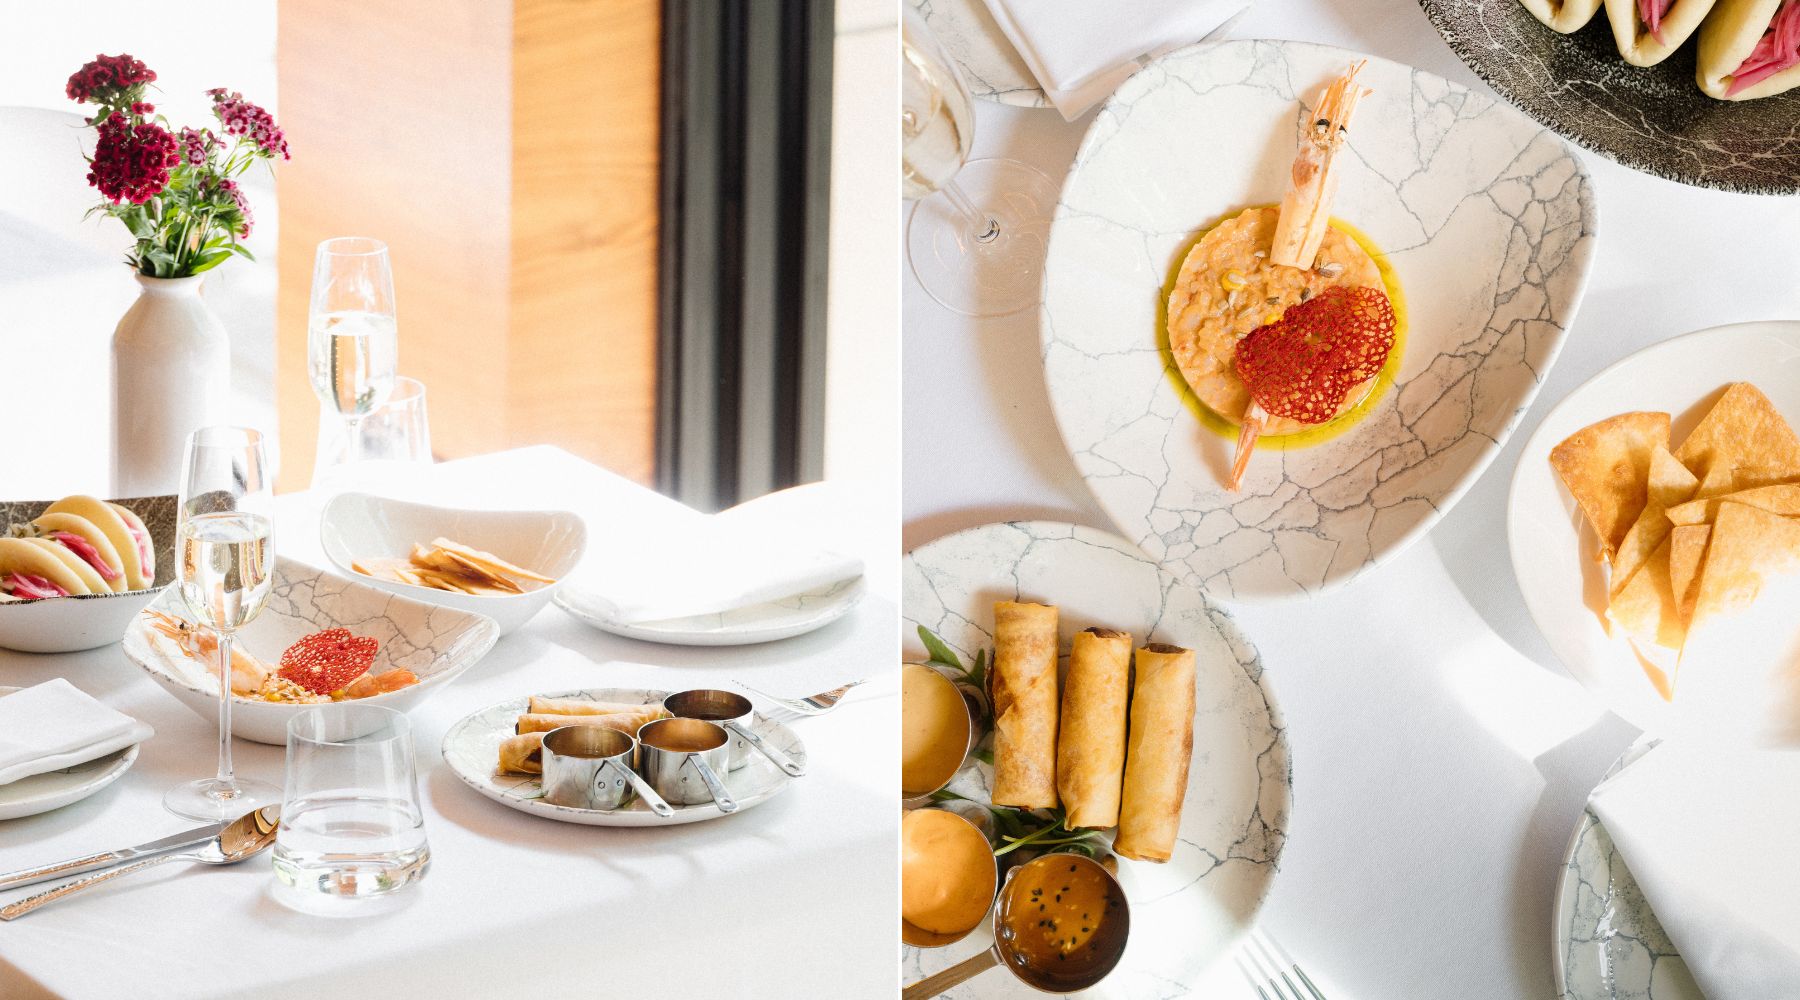 Novo mesto u gradu: FUZIO restoran spaja autentične ukuse mediteranske, francuske i azijske kuhinje